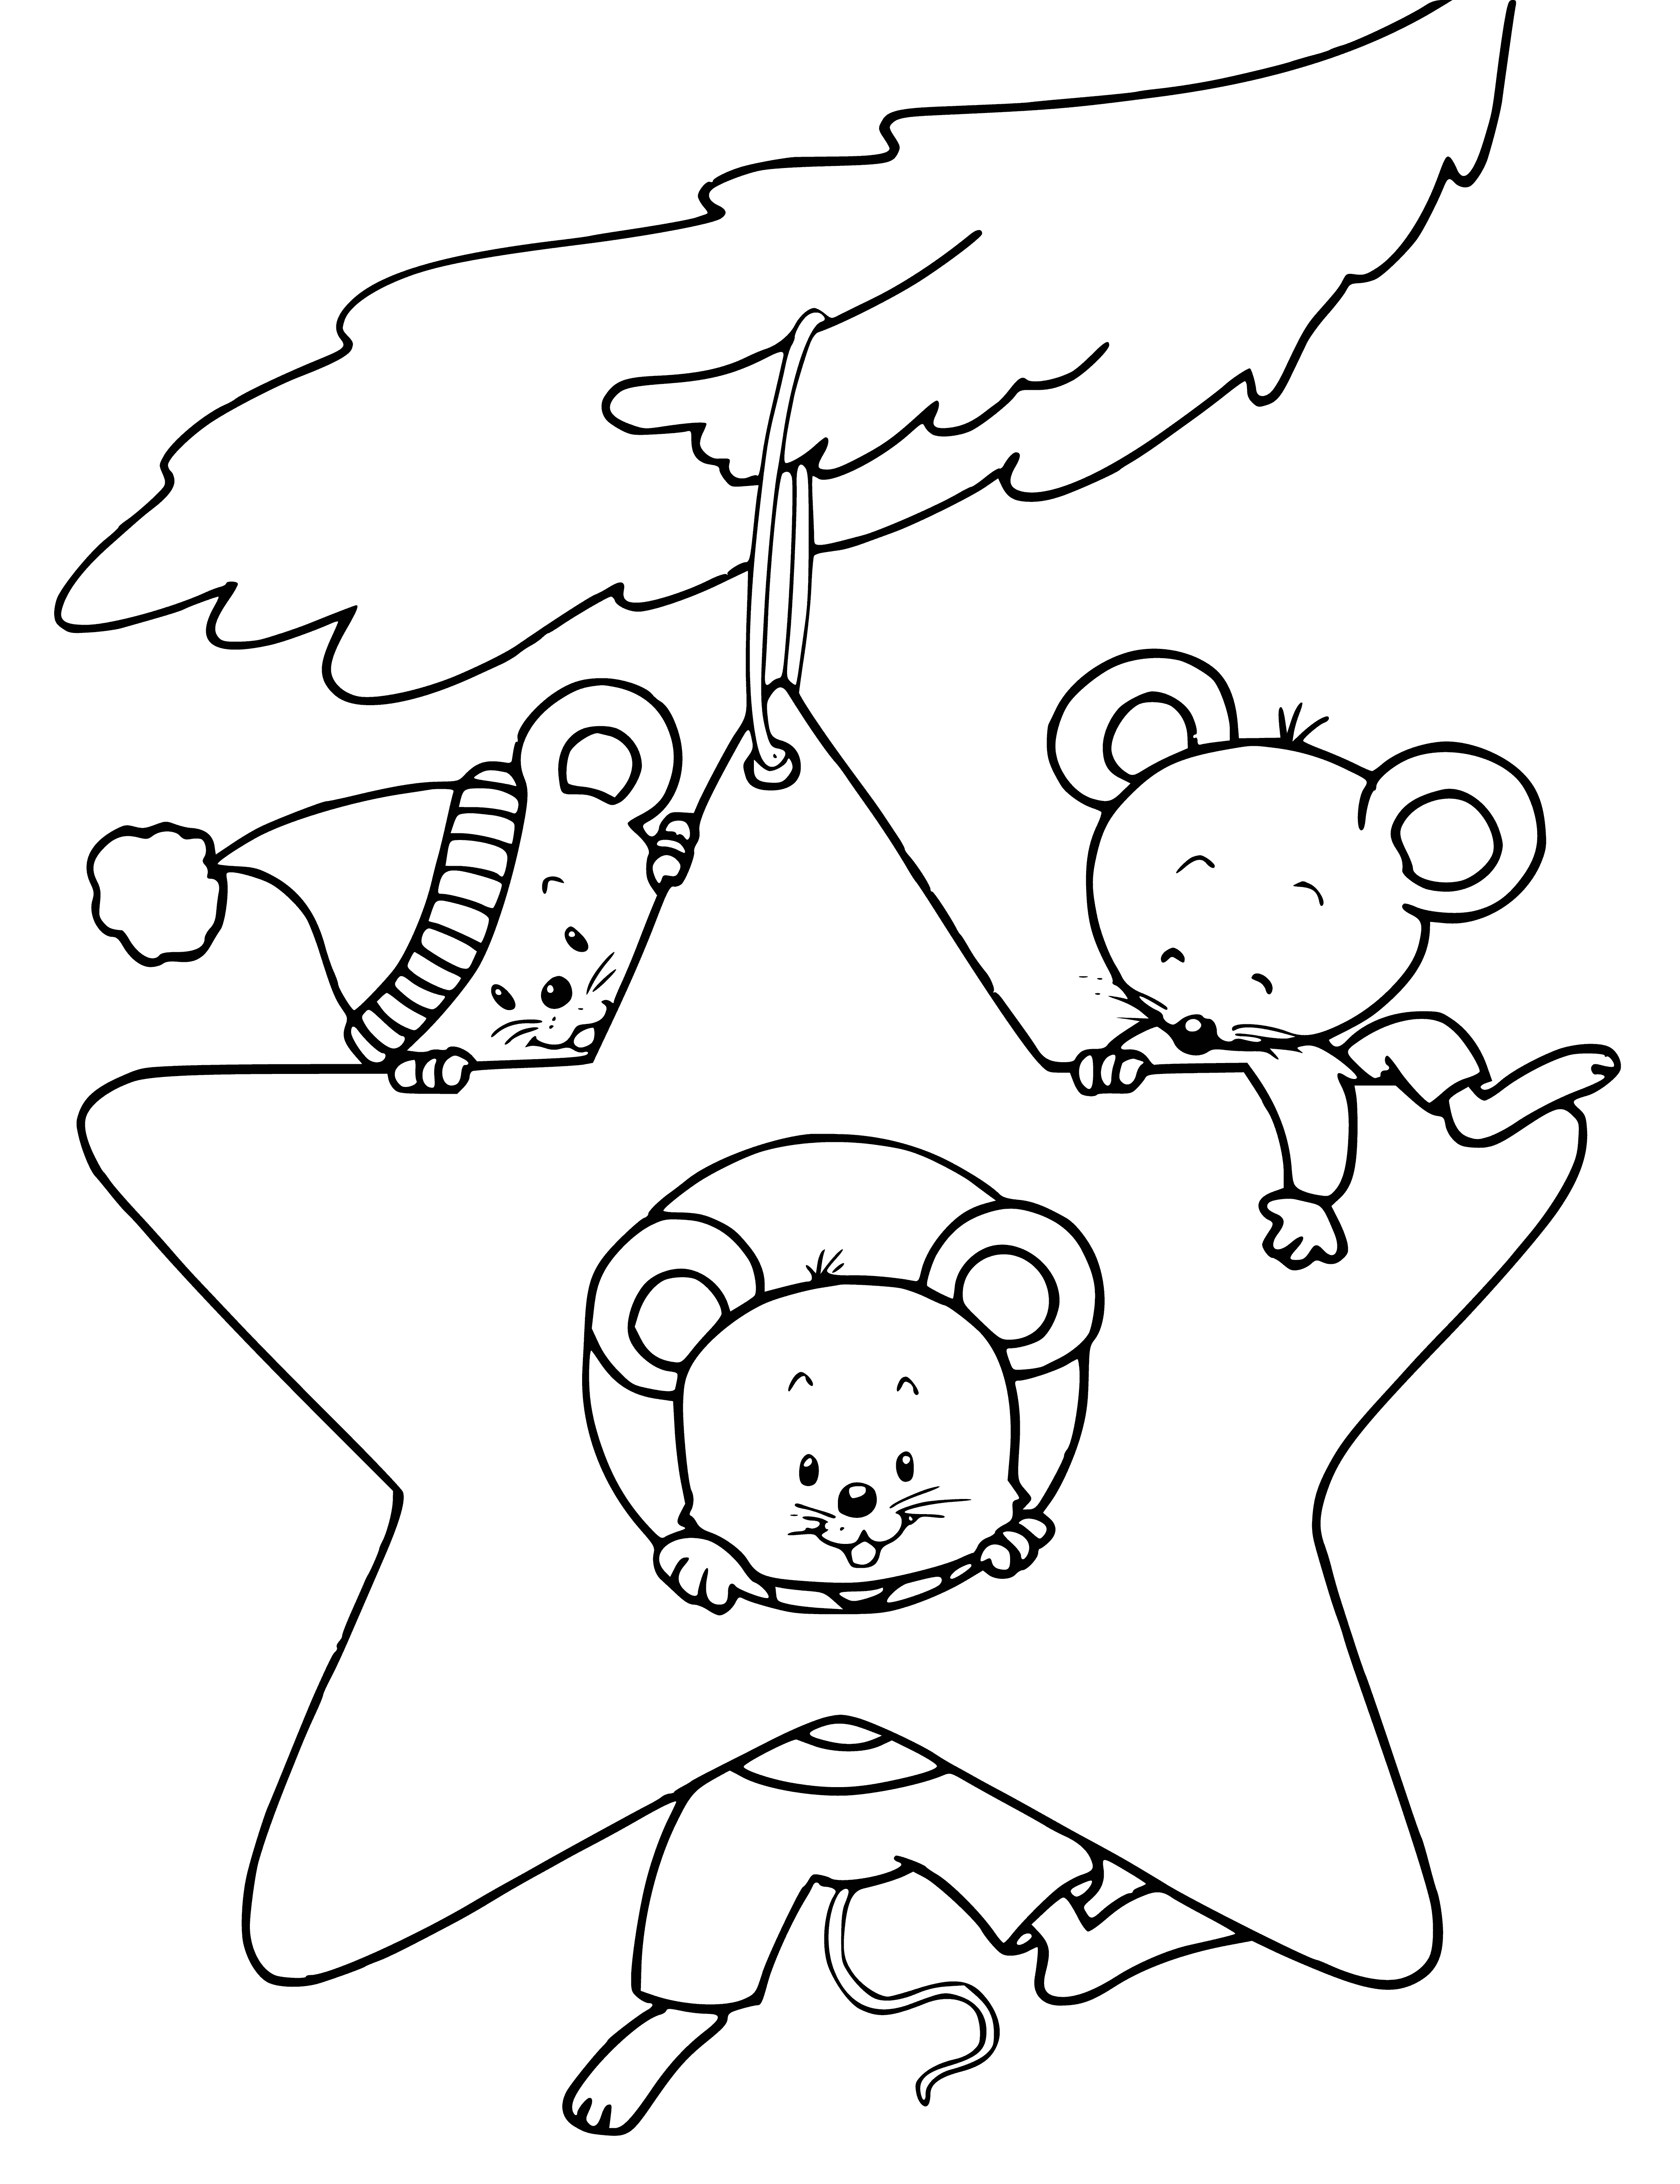 Myszy na drzewie kolorowanka